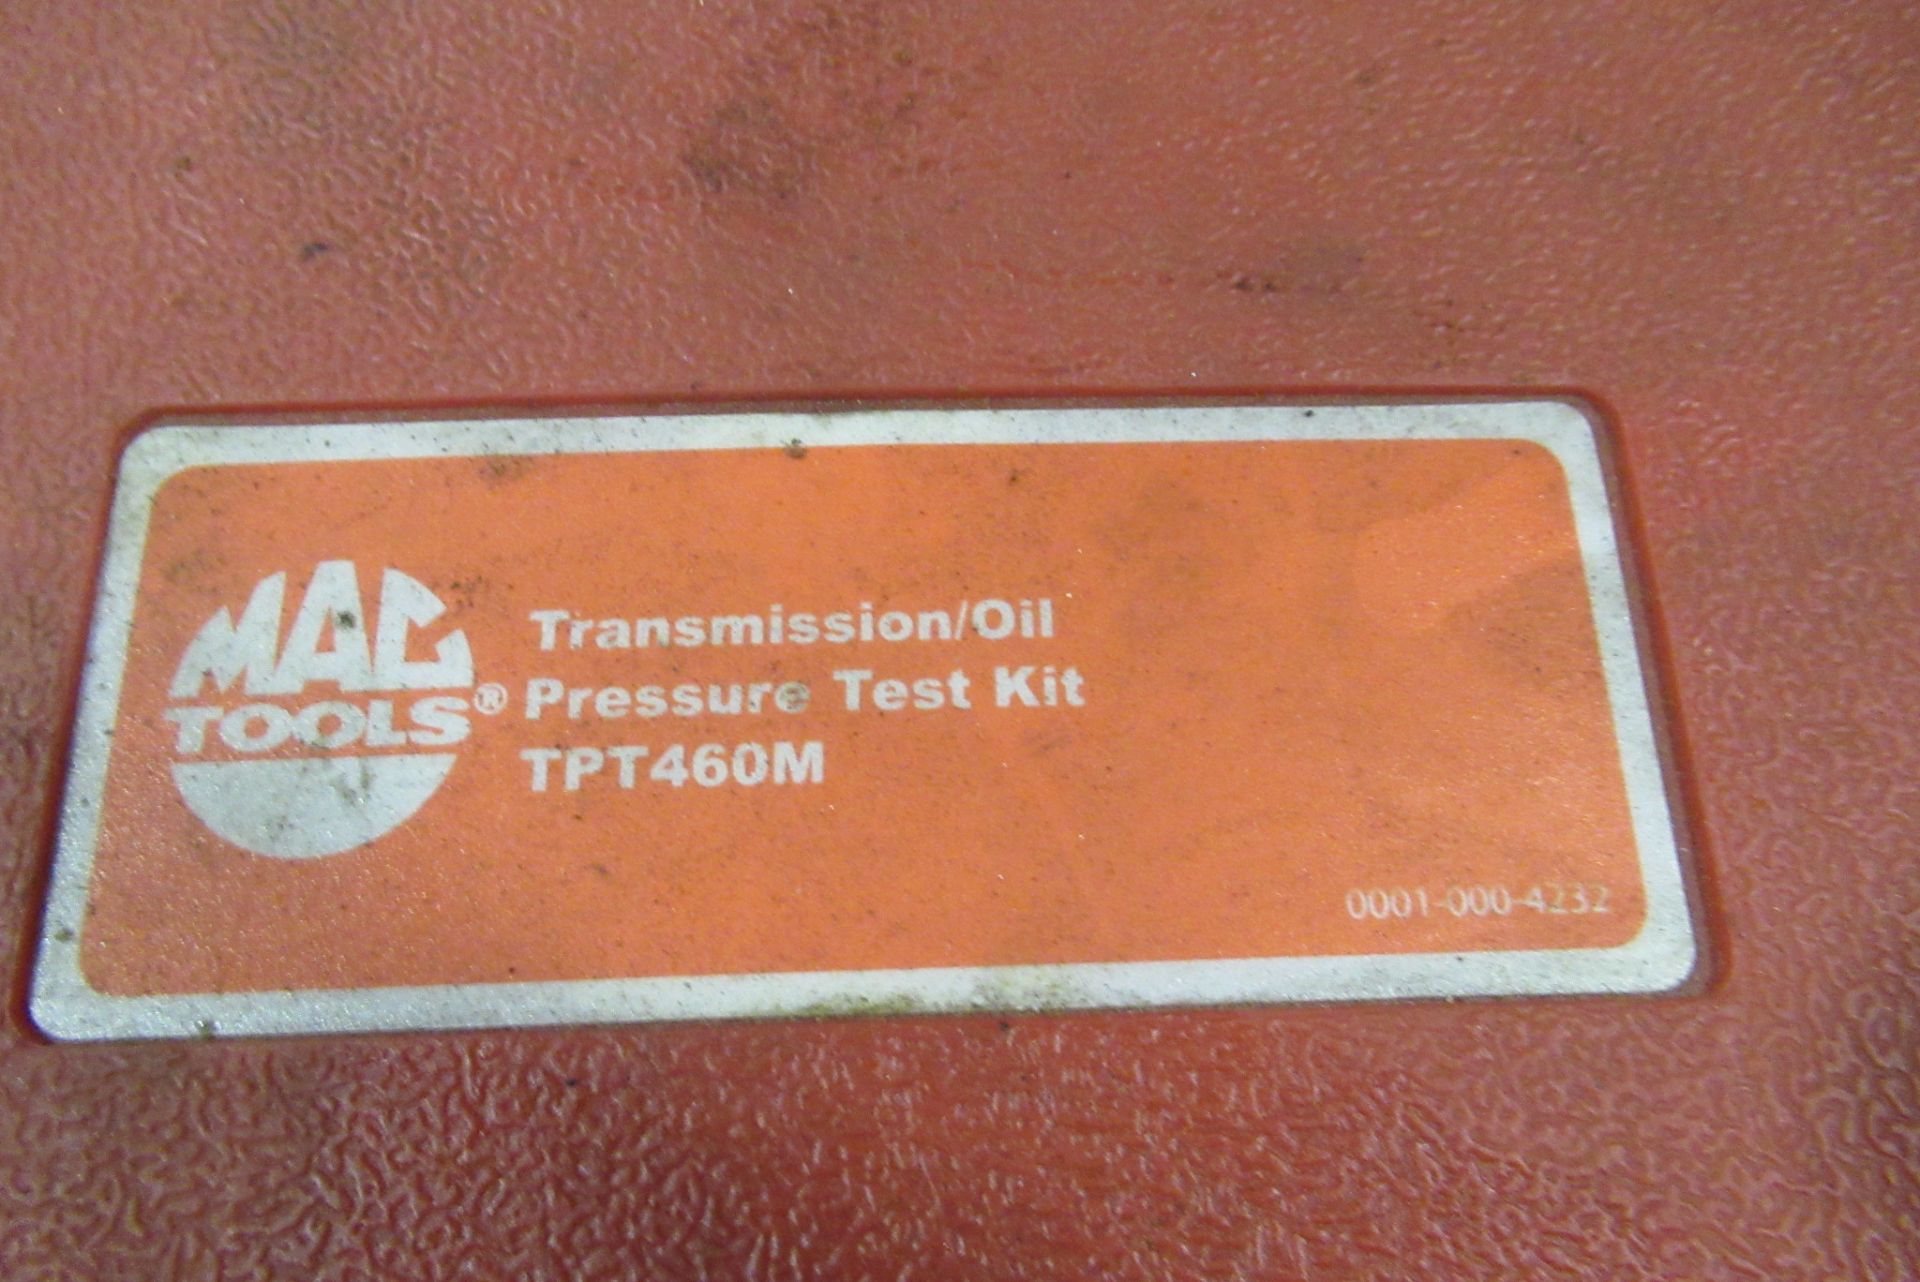 Mac Tools Transmission/Oil Pressure Test Kit - Bild 2 aus 5